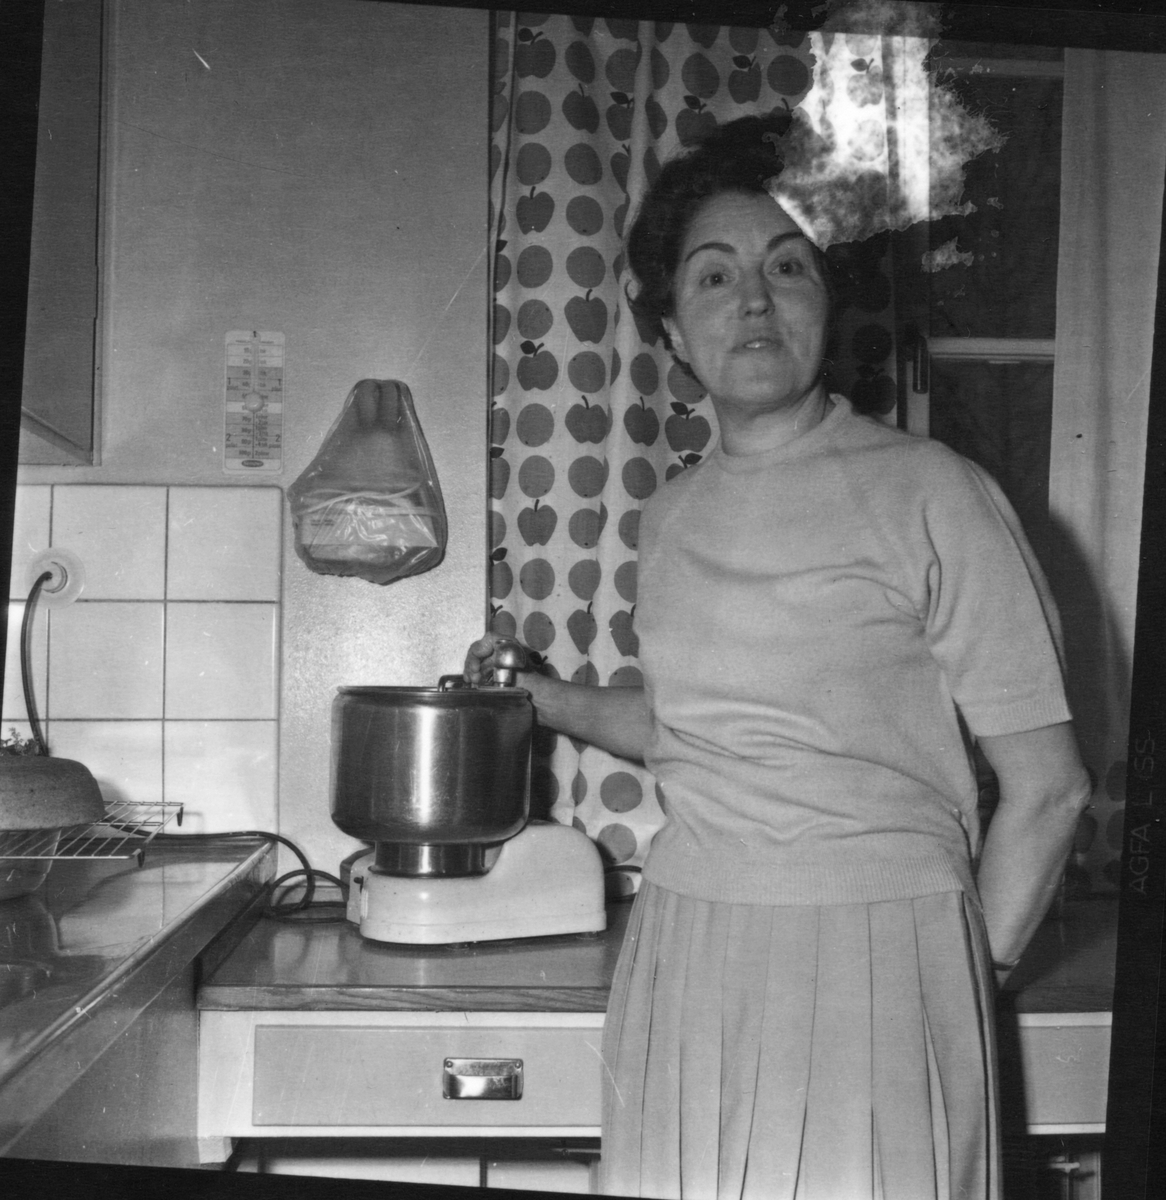 Nystad, Karin,
Prästgården,
17 Dec 1965